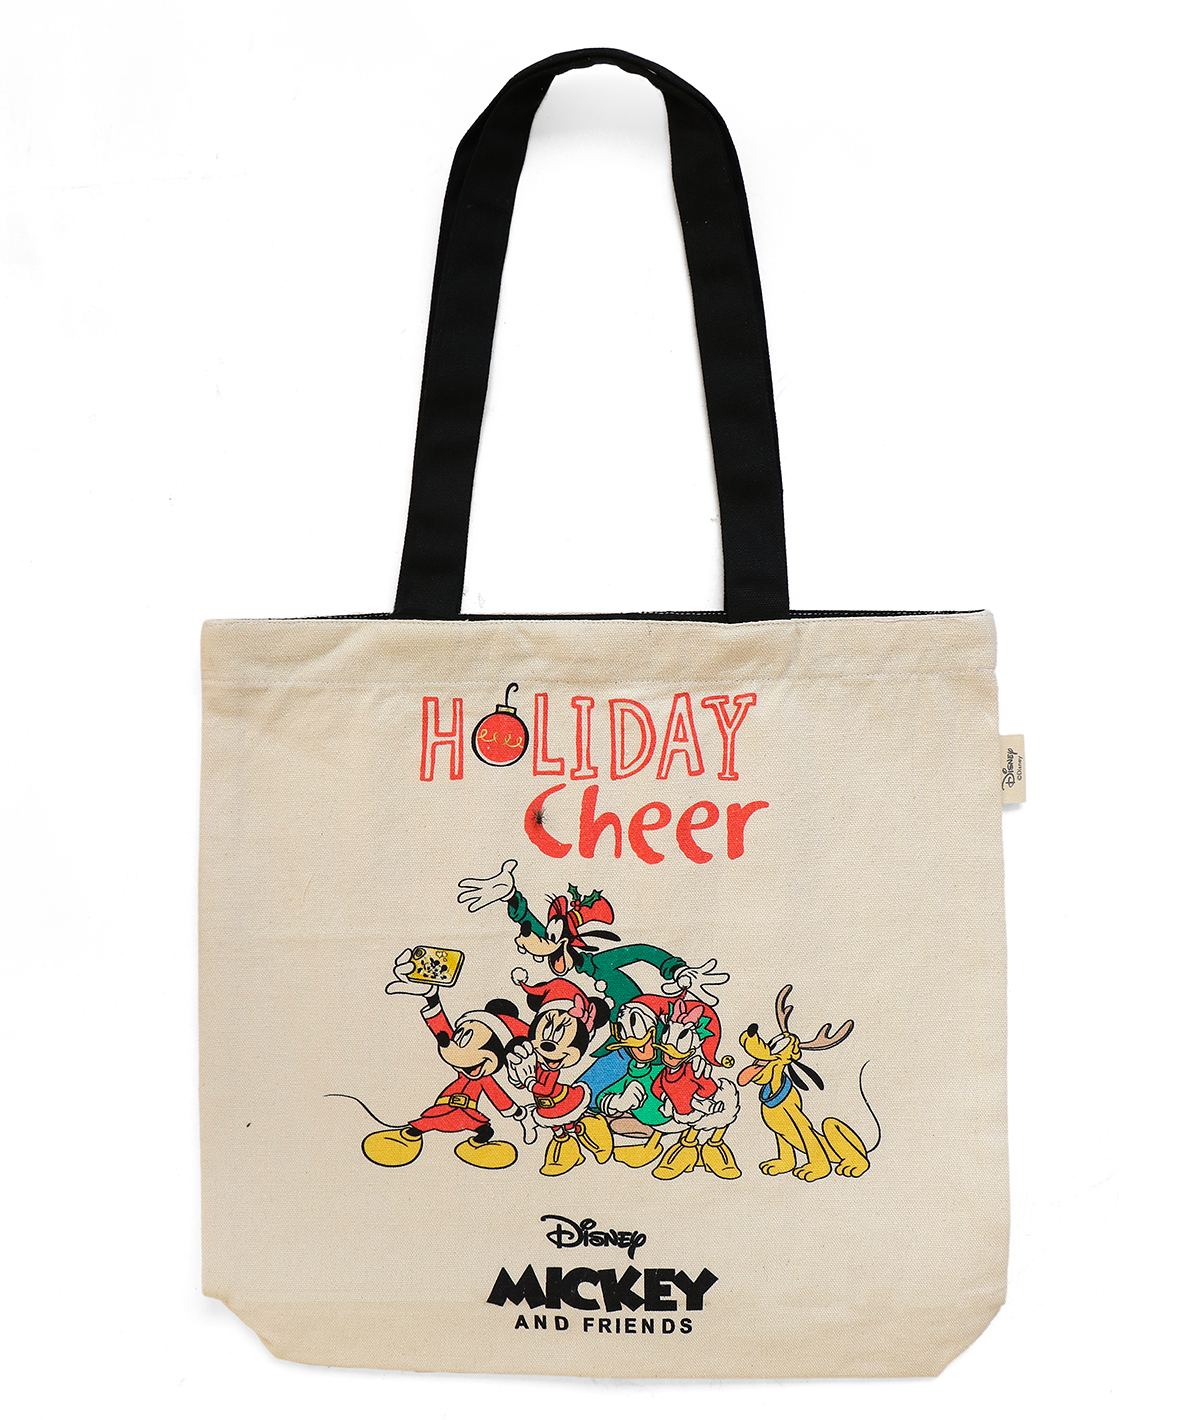 Disney printed bags